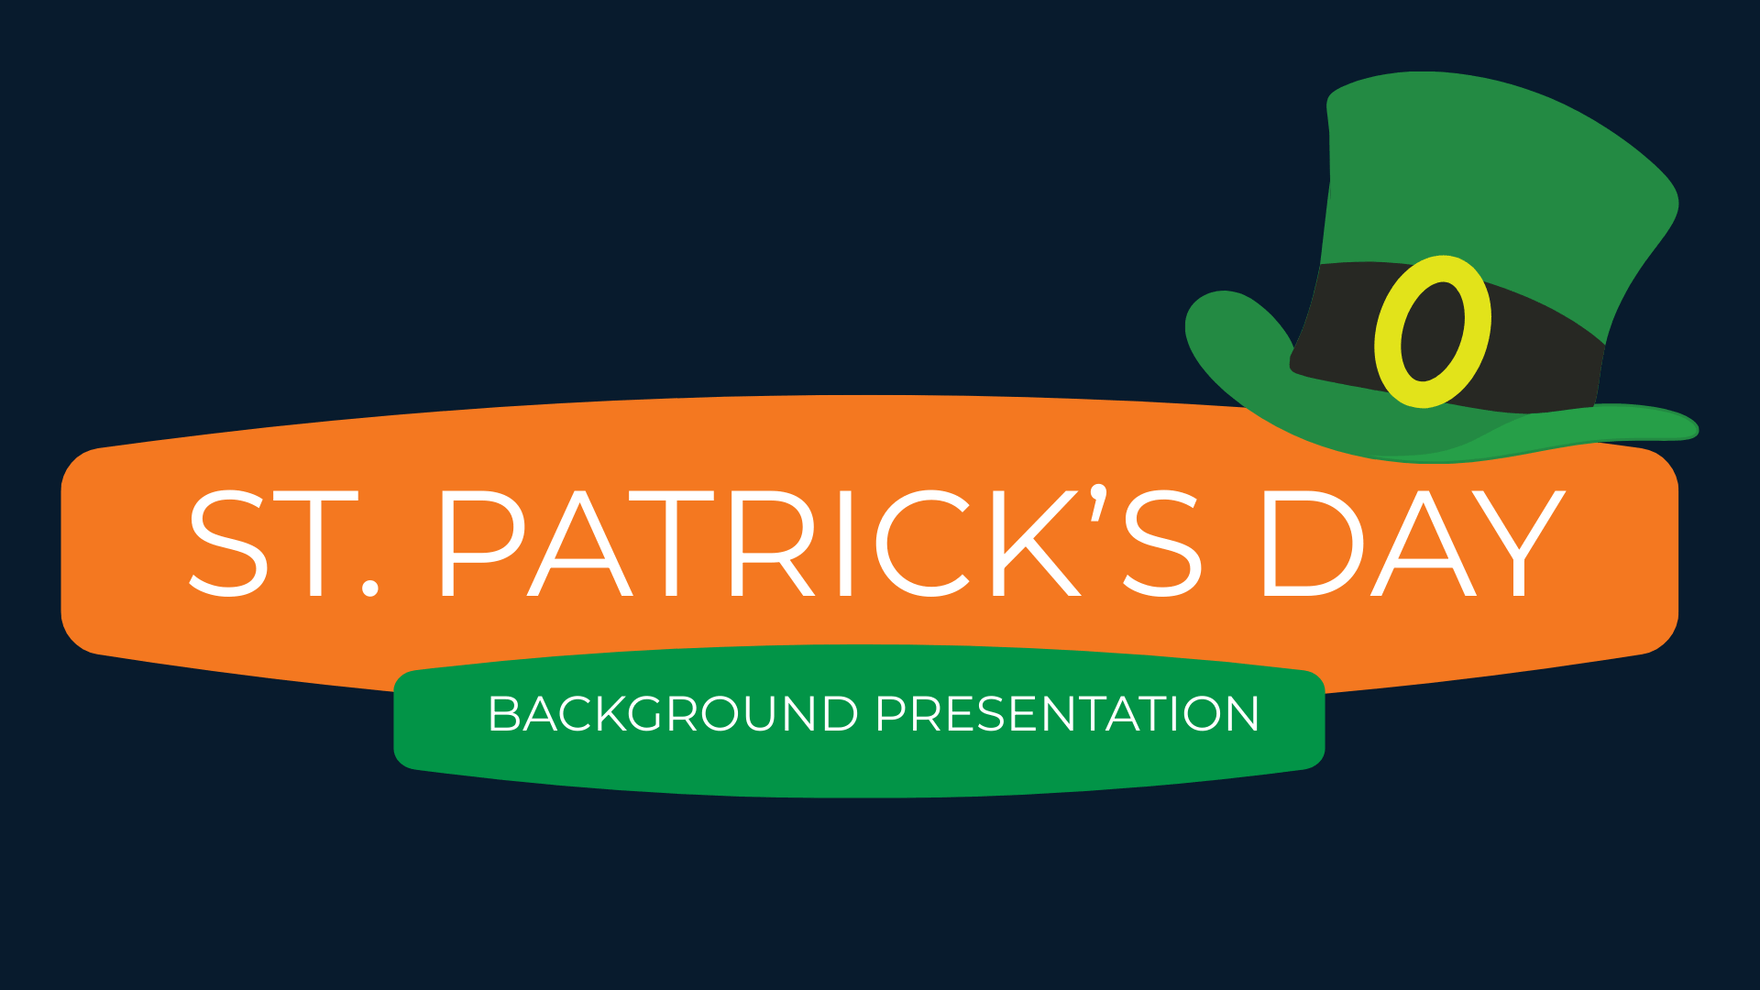 St. Patrick's Day Background Presentation